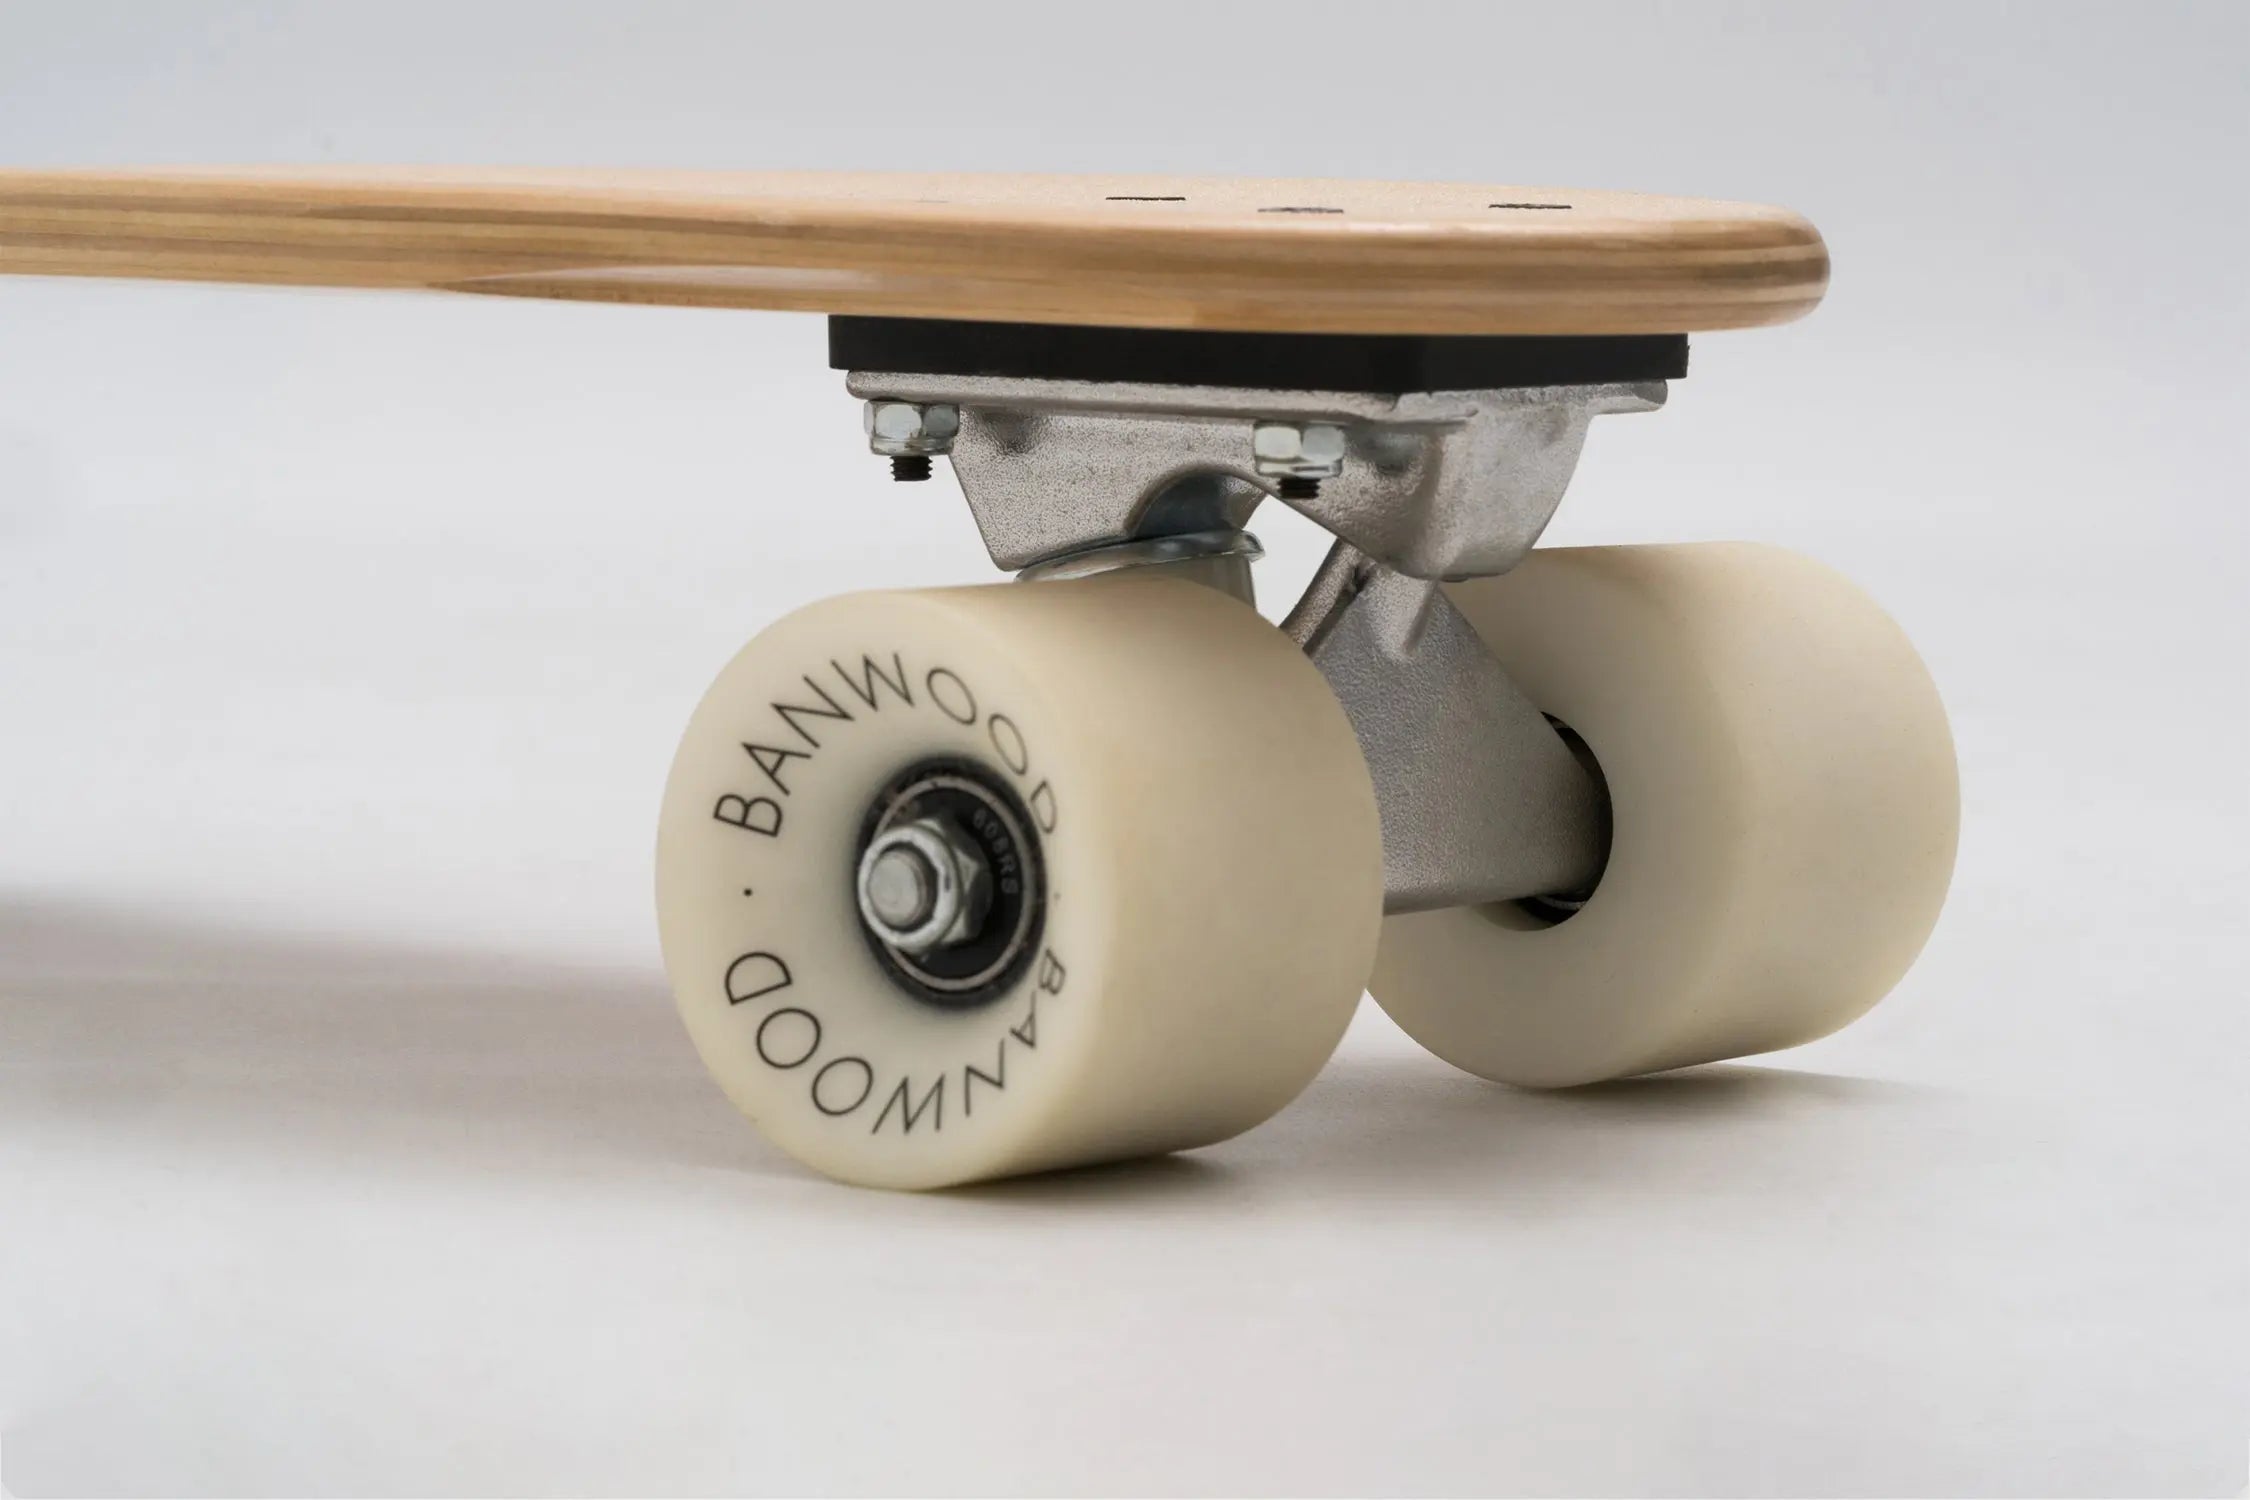 Child Skateboard, Nature  Banwood   